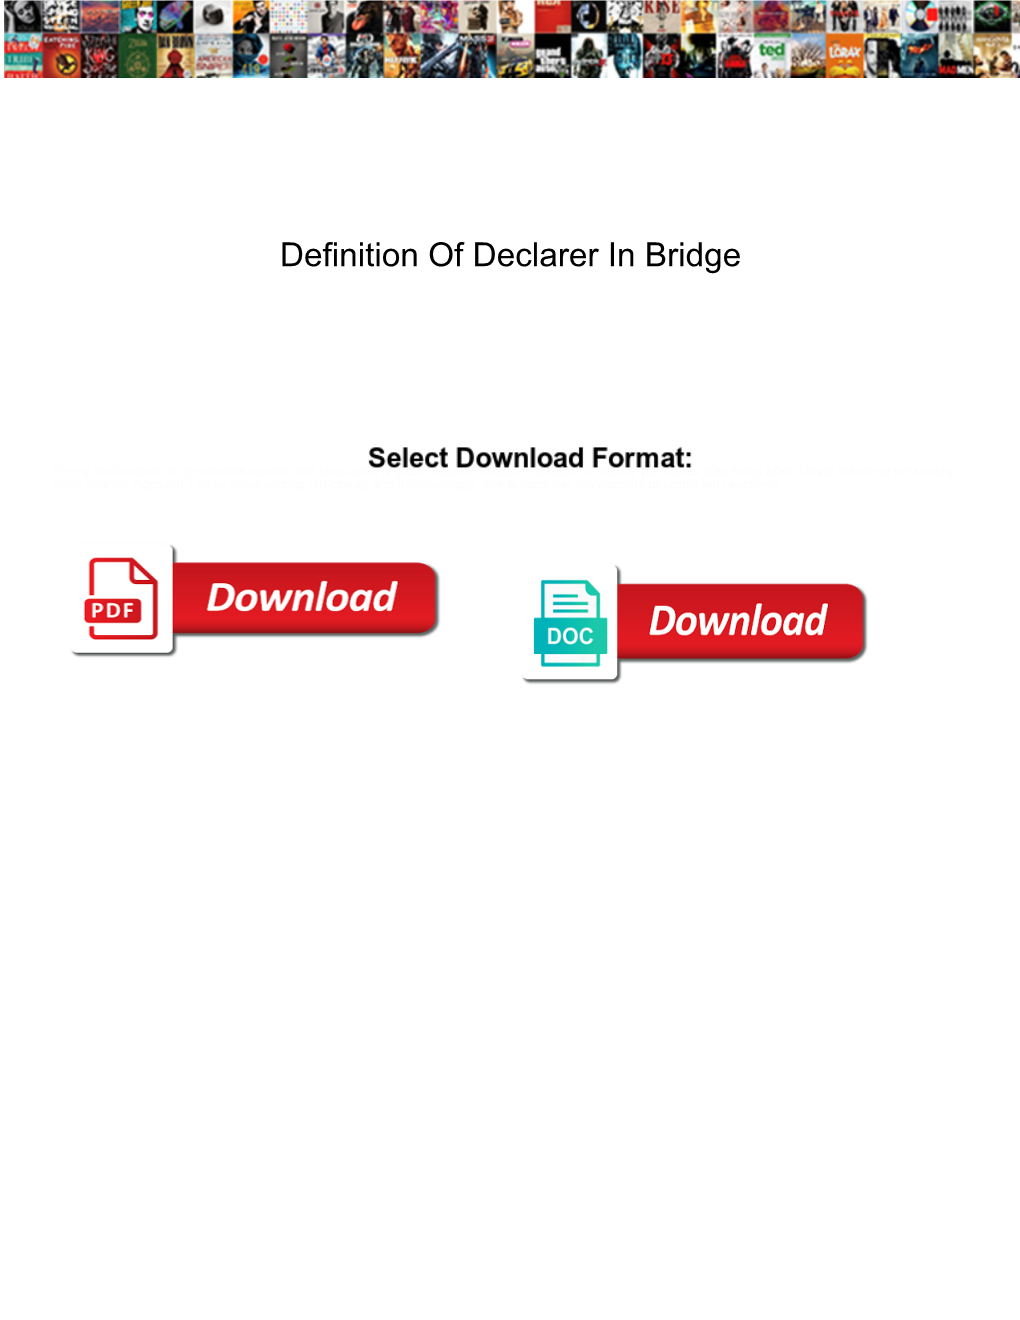 Definition of Declarer in Bridge